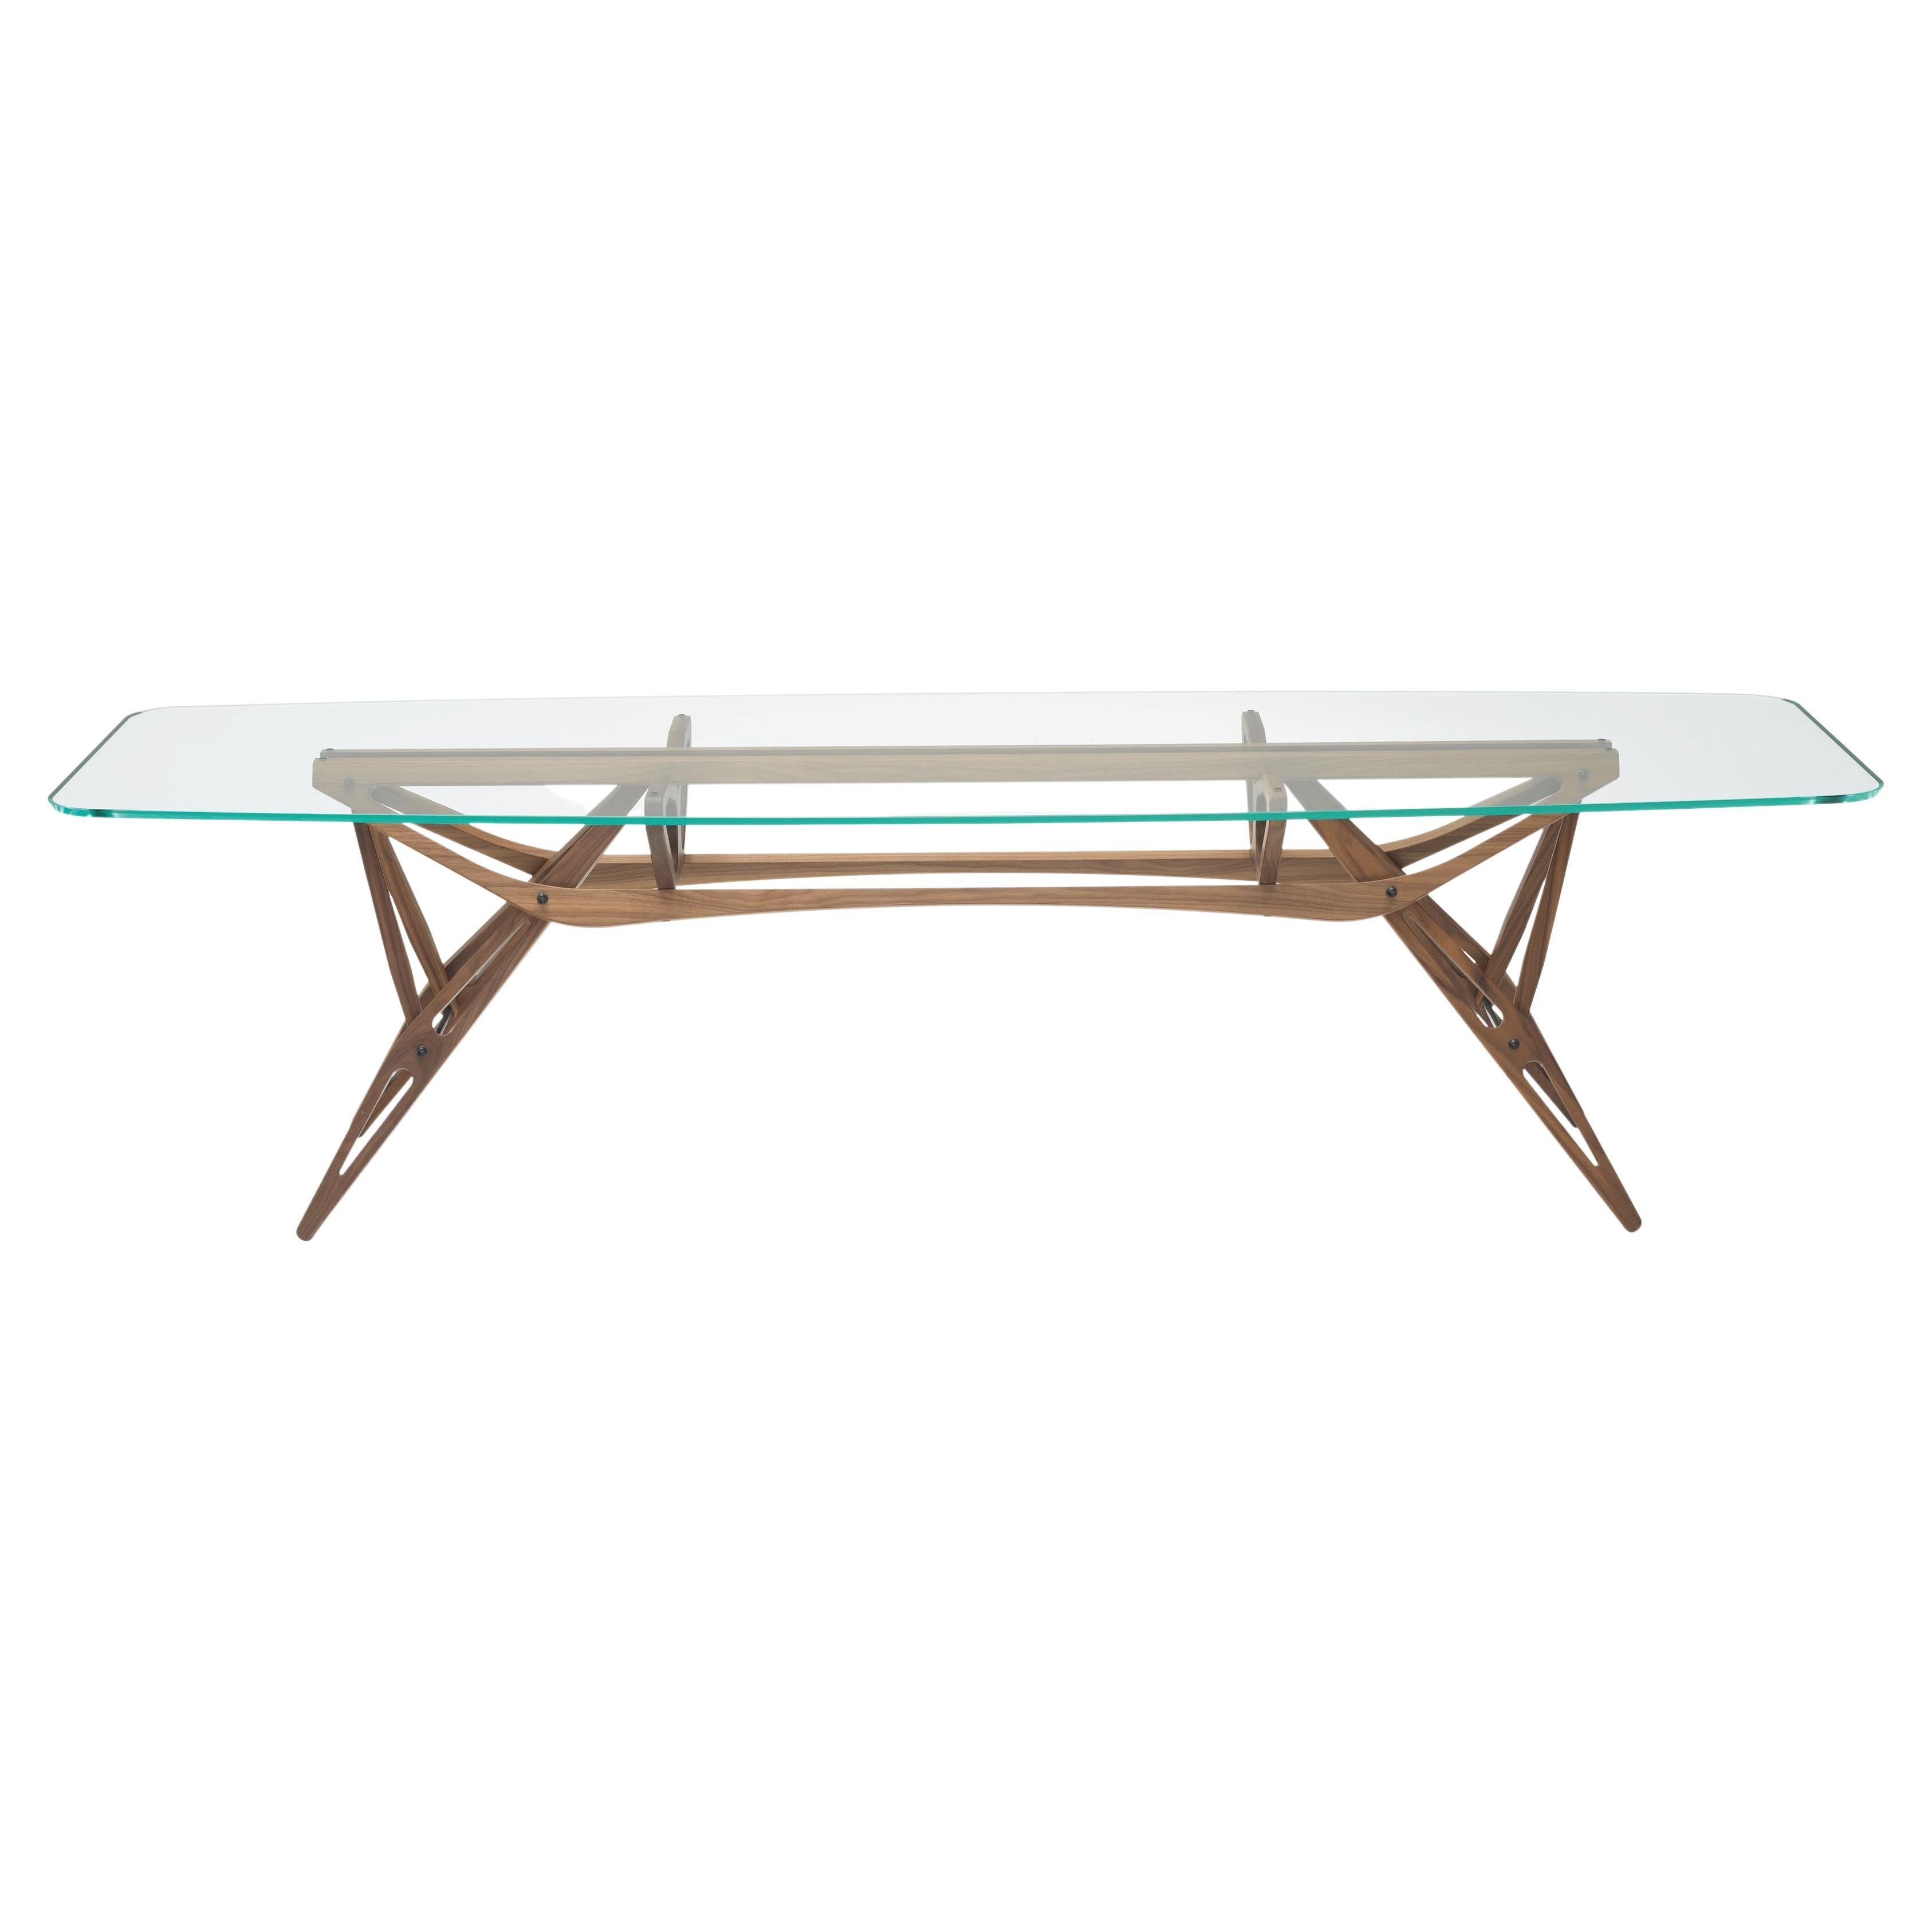 Petite table Zanotta Reale CM avec plateau en verre extra transparent et cadre en noyer Canaletto